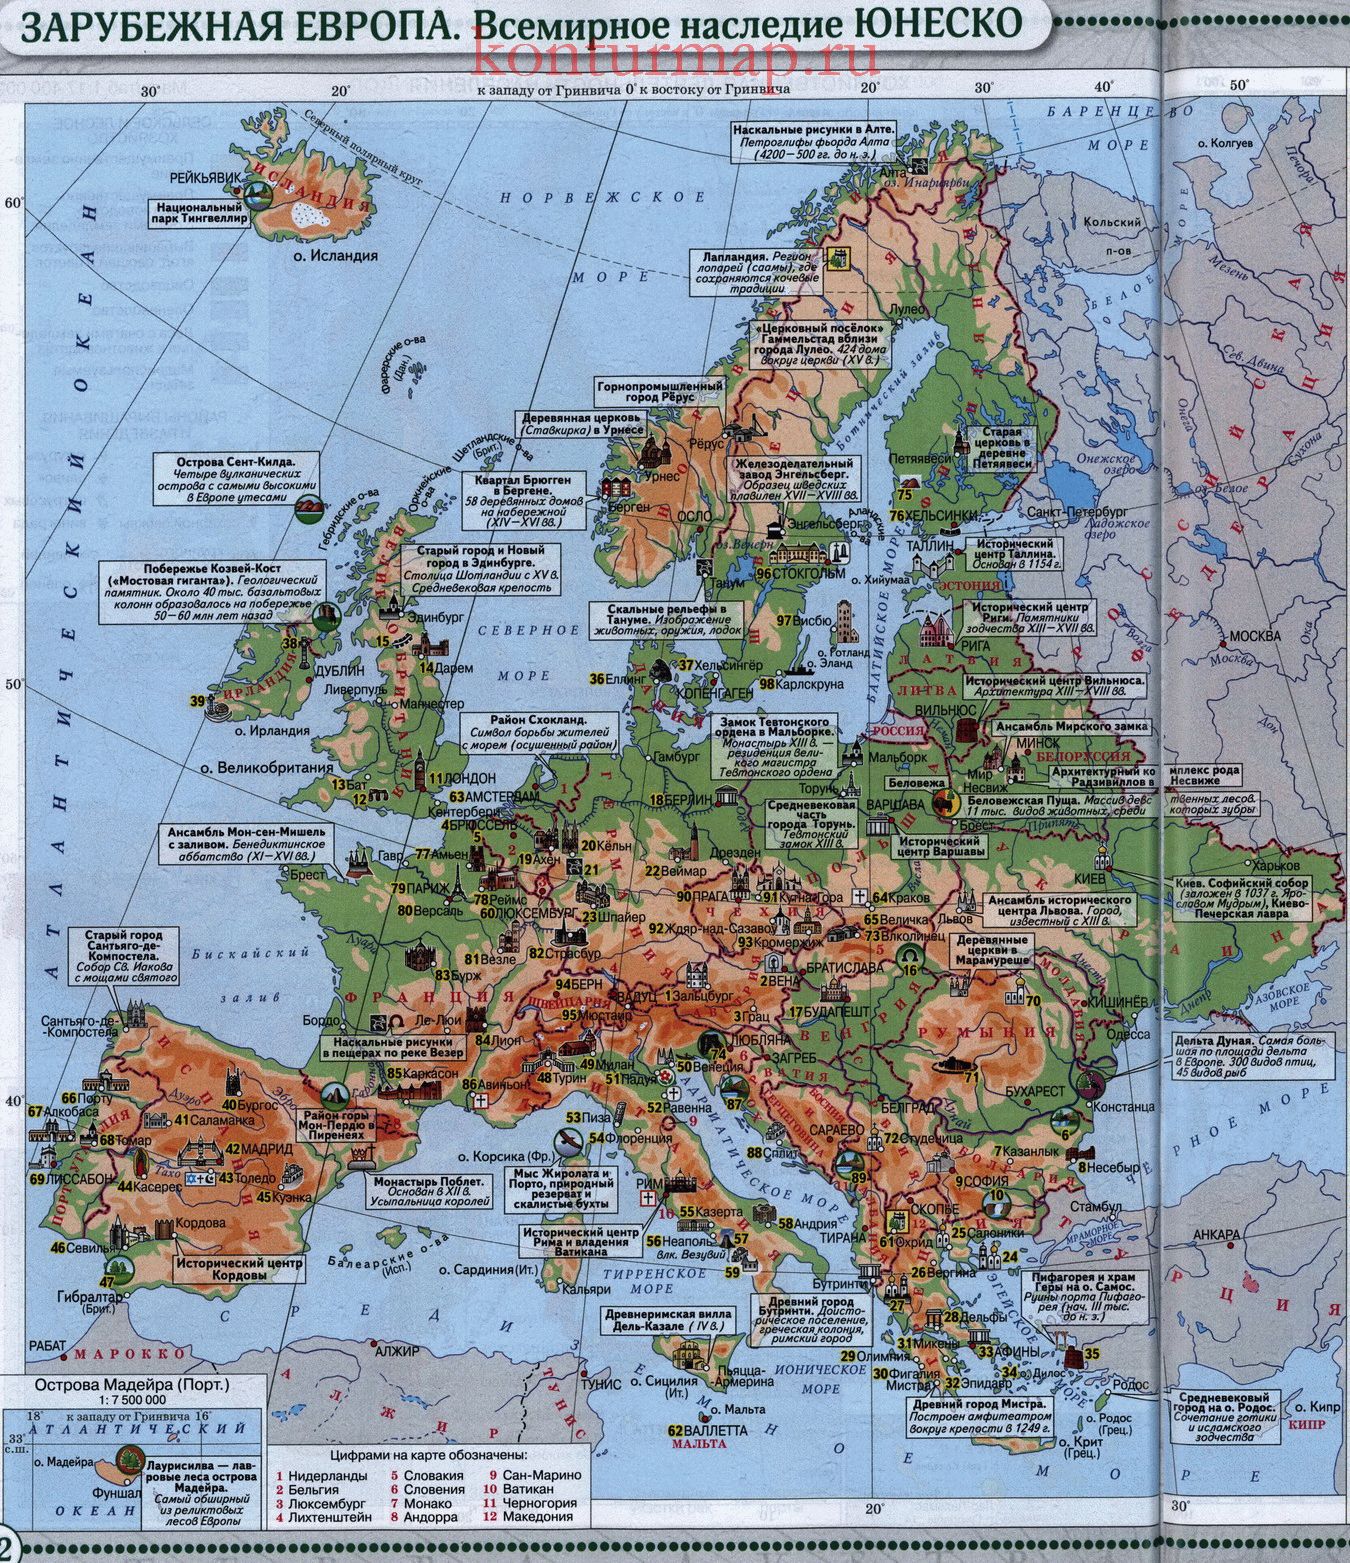 Зарубежная европа находится. Объекты ЮНЕСКО В Европе на карте. Объекты культурного наследия ЮНЕСКО на карте в Европе. Карта ЮНЕСКО Европы. Карта с памятниками ЮНЕСКО В Европе.